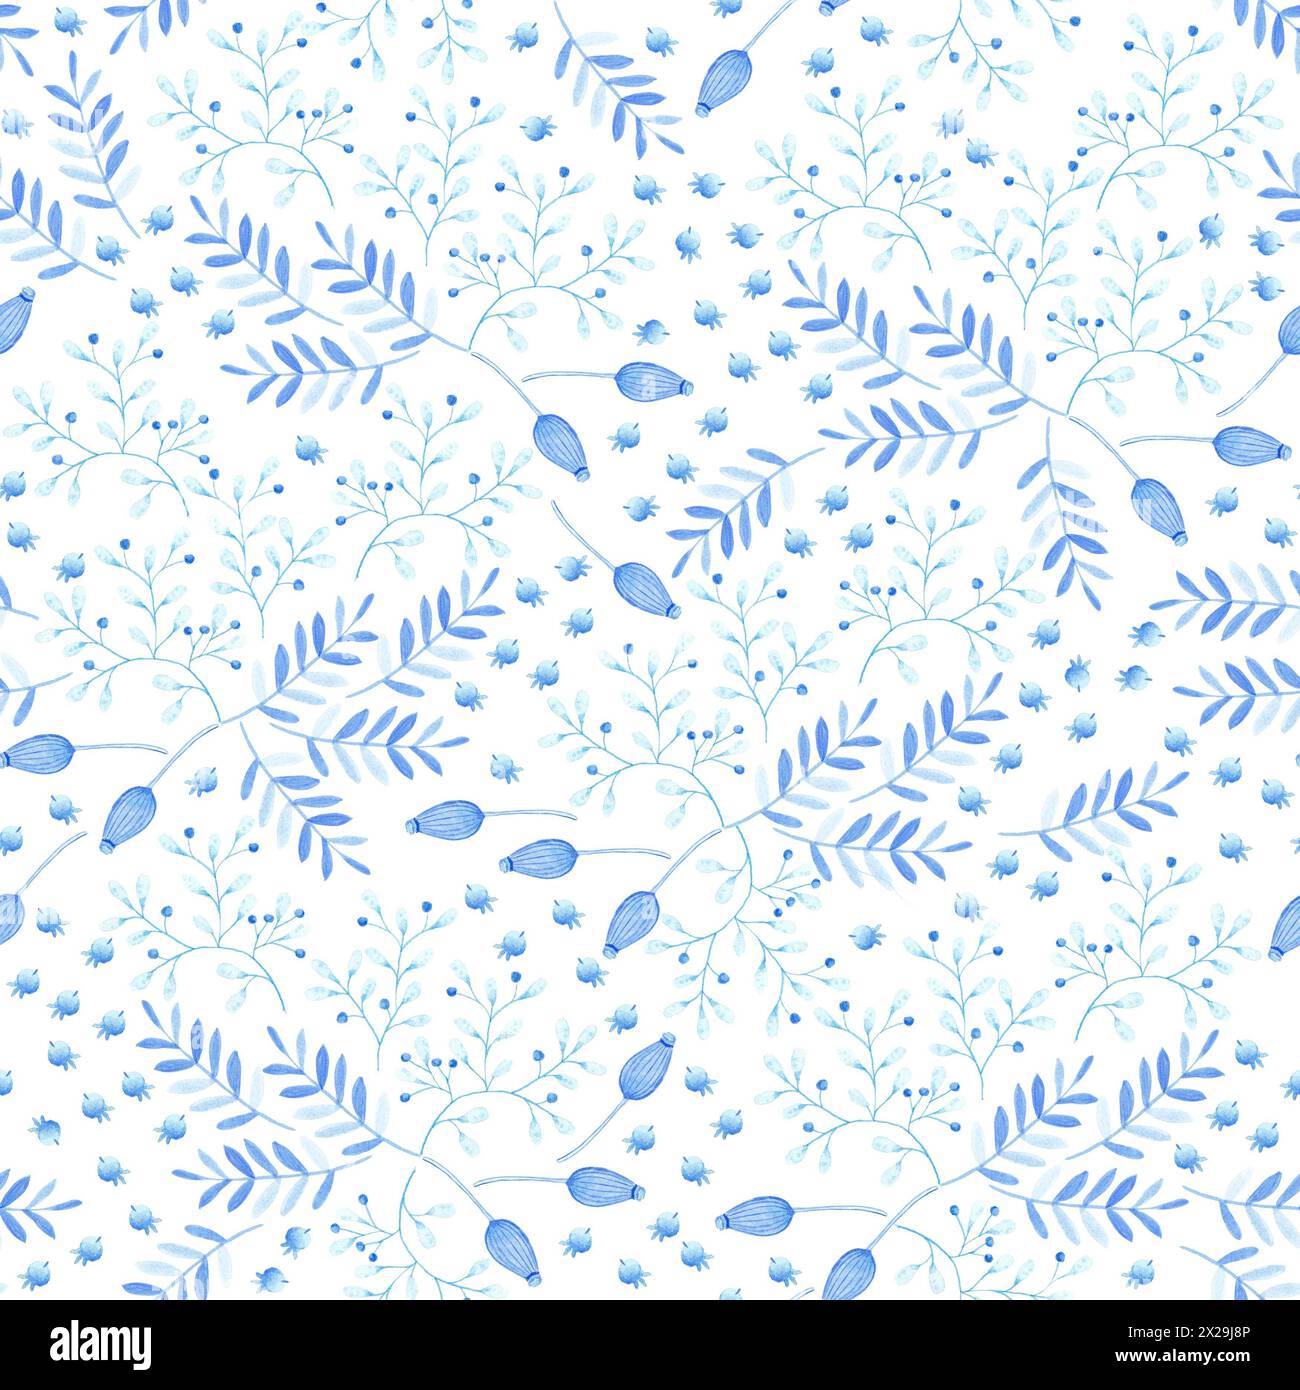 Illustrazione a motivi botanici senza cuciture con rami blu e azzurri , foglie e fiori selvatici su sfondo bianco. Tema primavera ed estate. Foto Stock